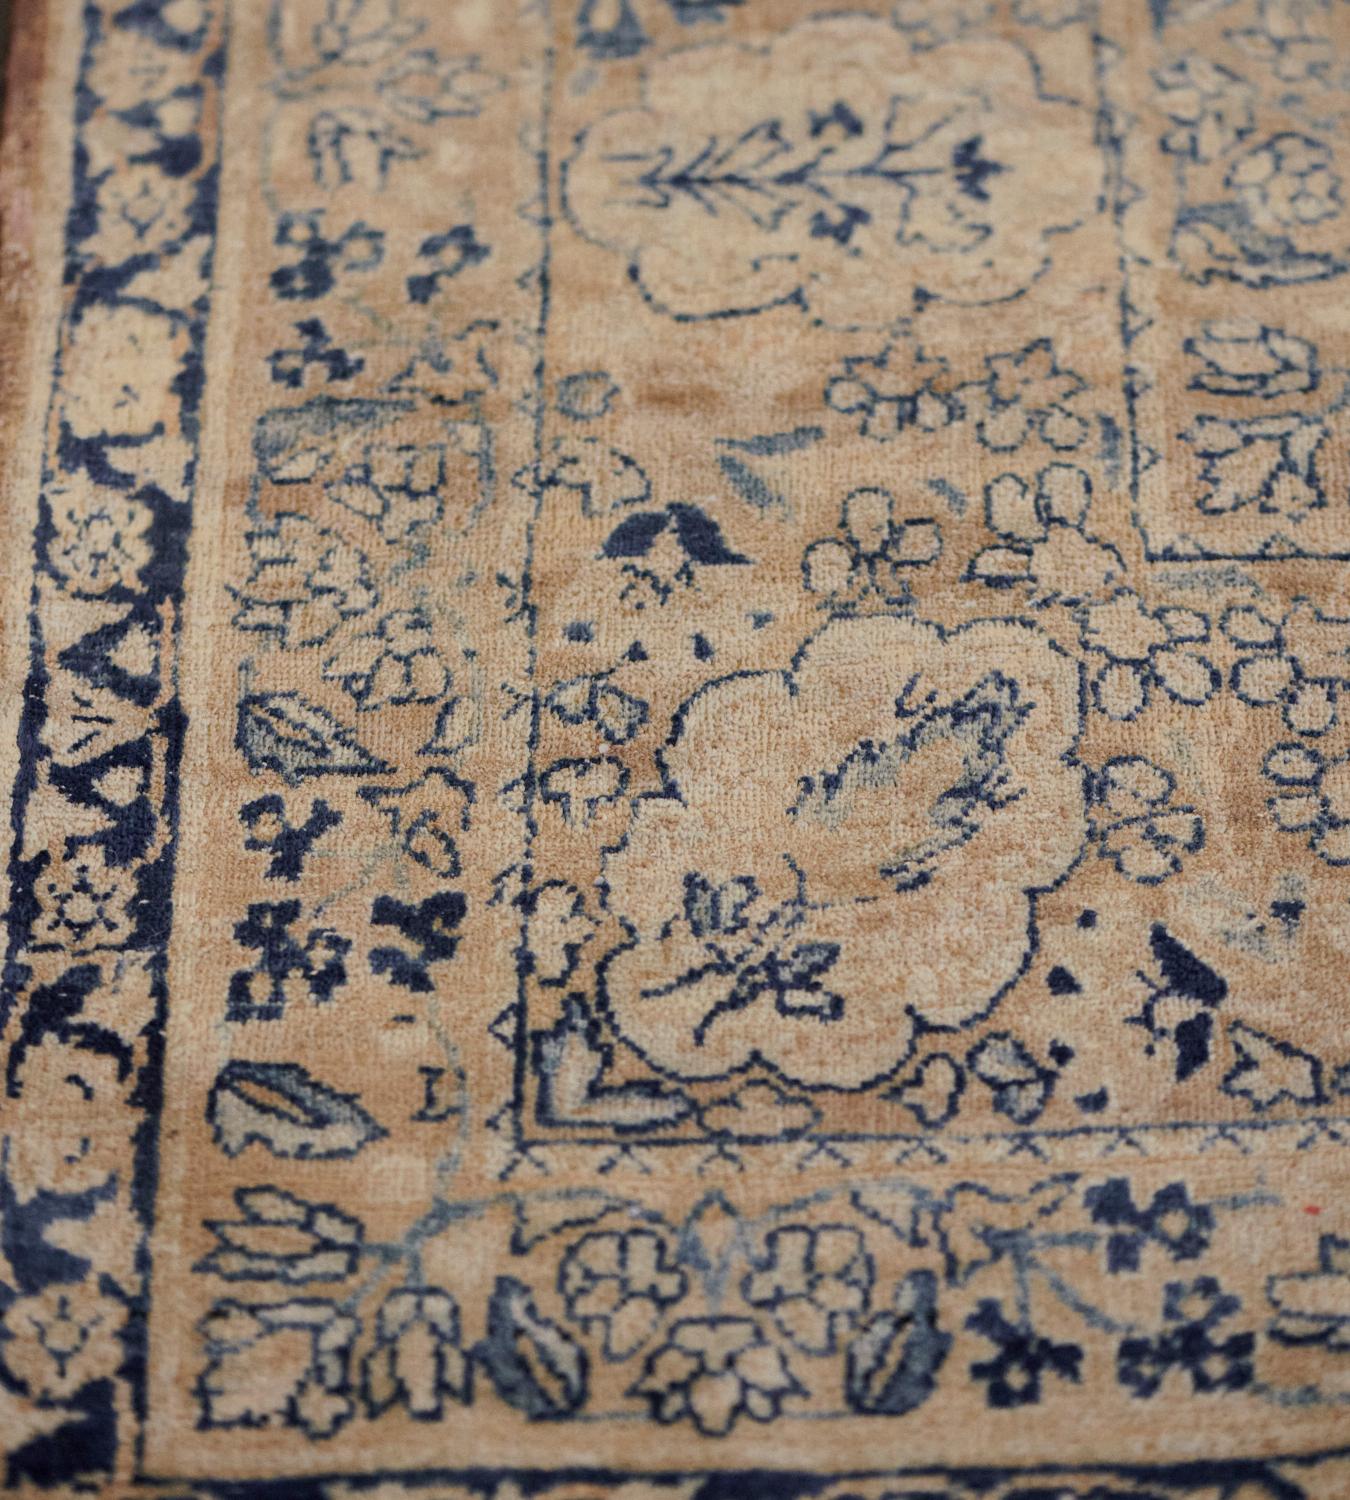 kerman rugs